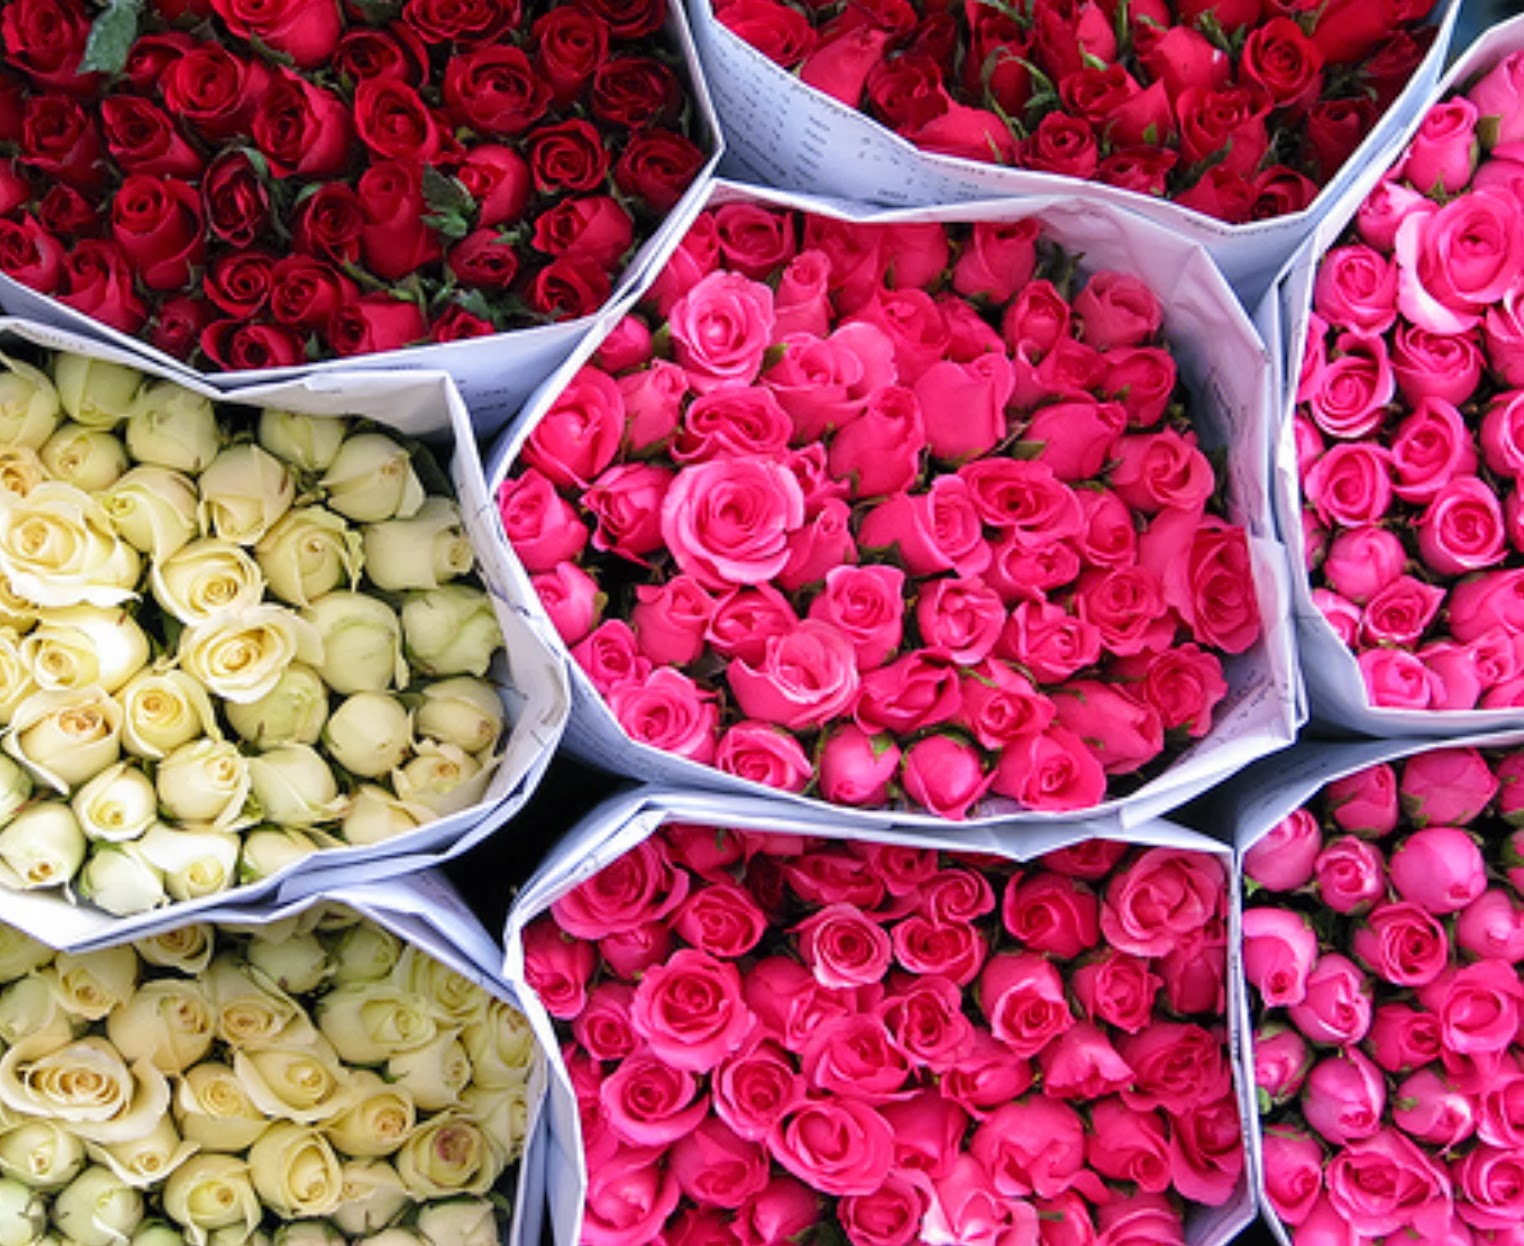 Купить розы от производителя. Голландские розы. Цветочная база розы. Склад цветов.